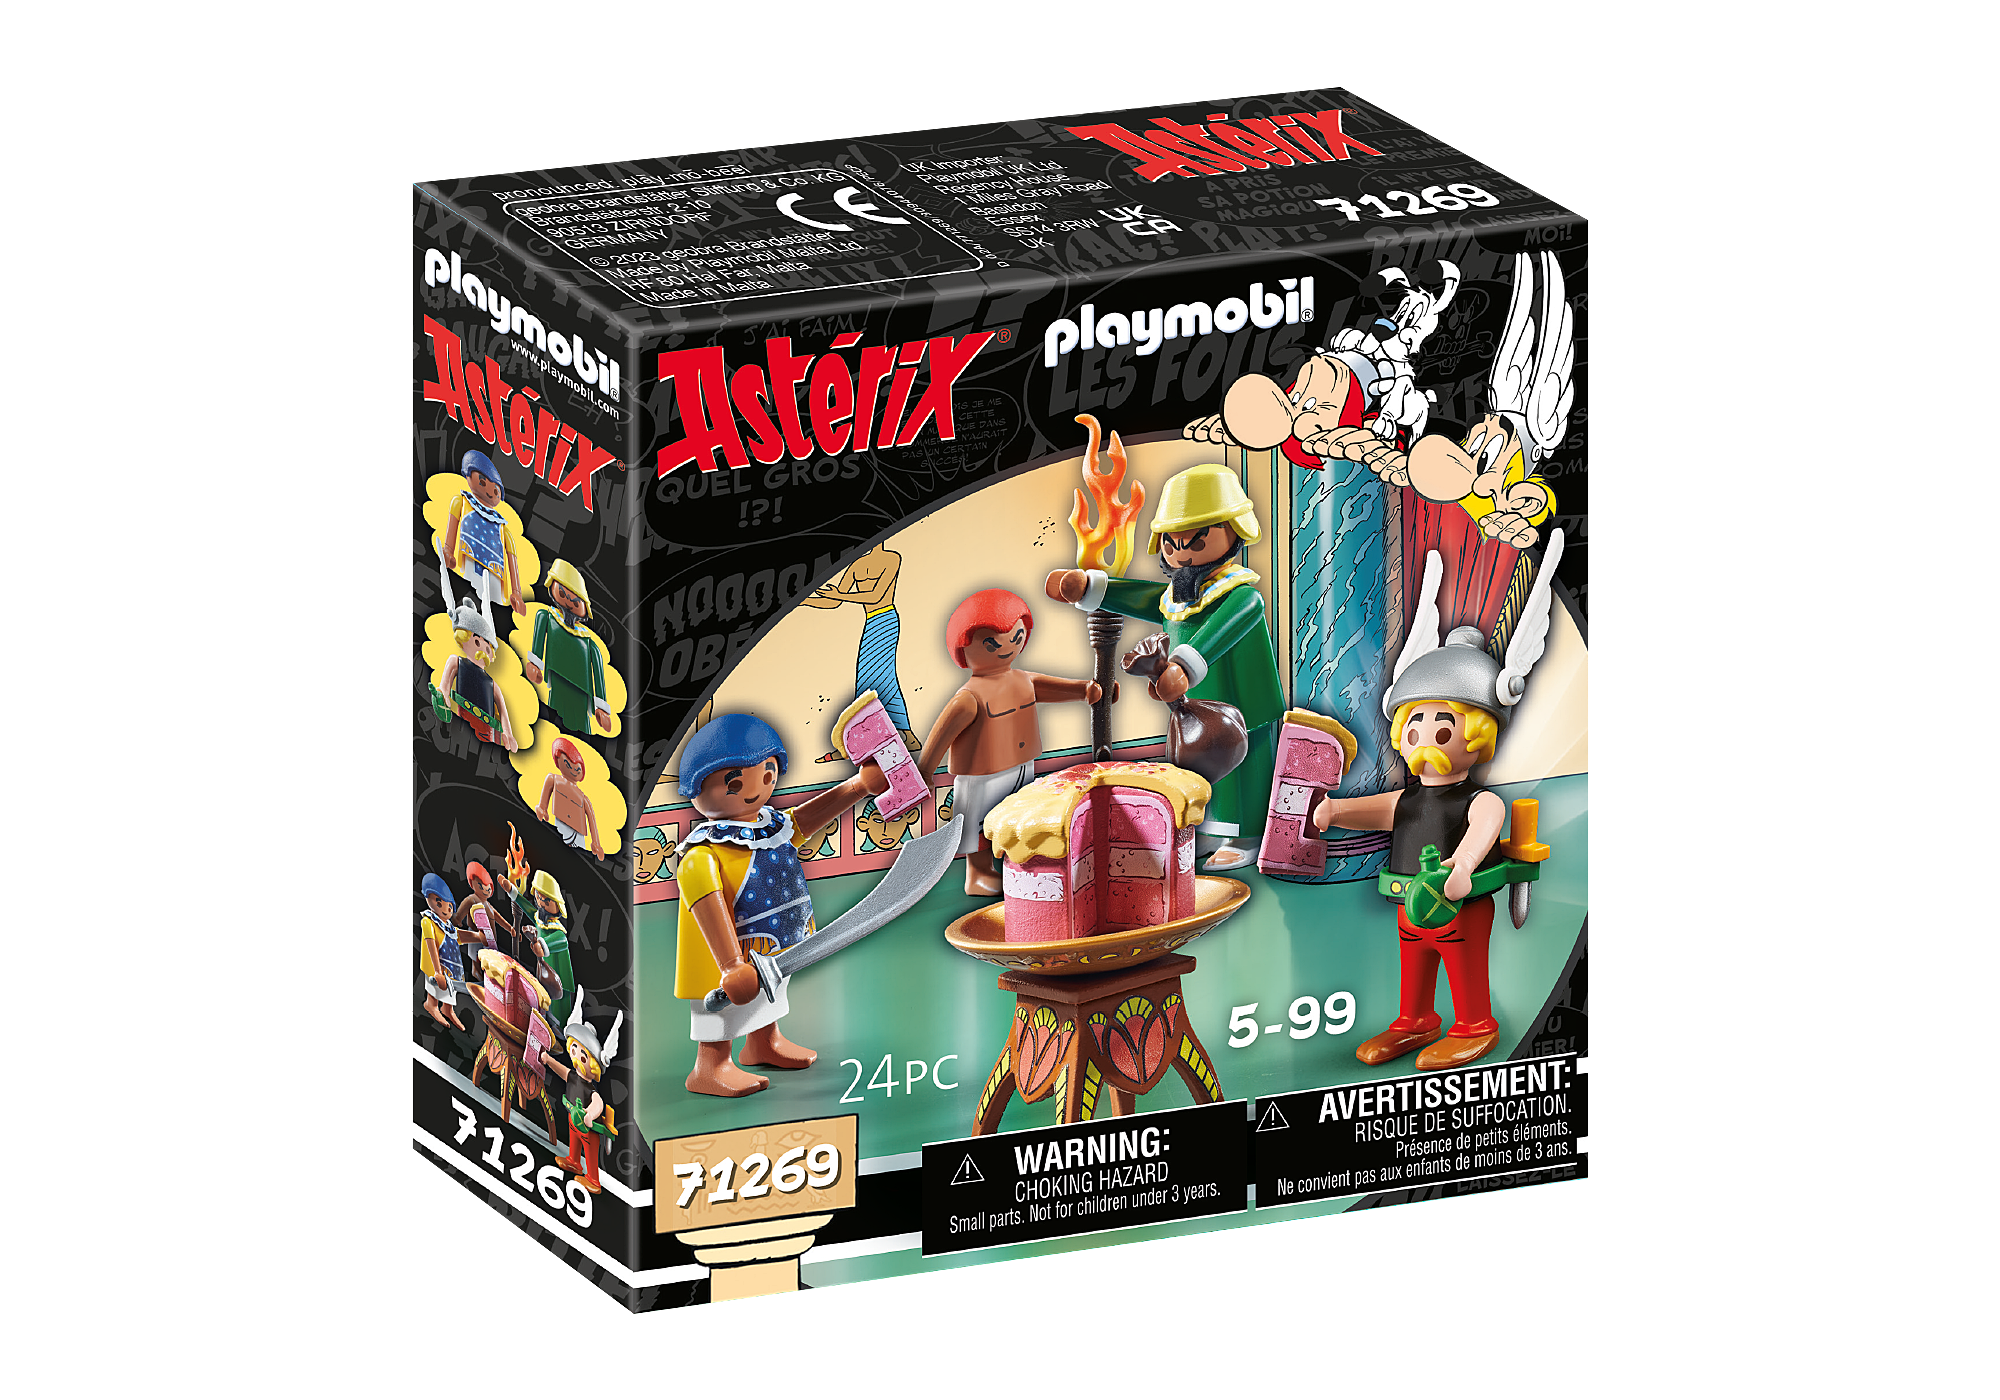 Playmobil Asterix: Paletabis Y La Tarta Envenenada